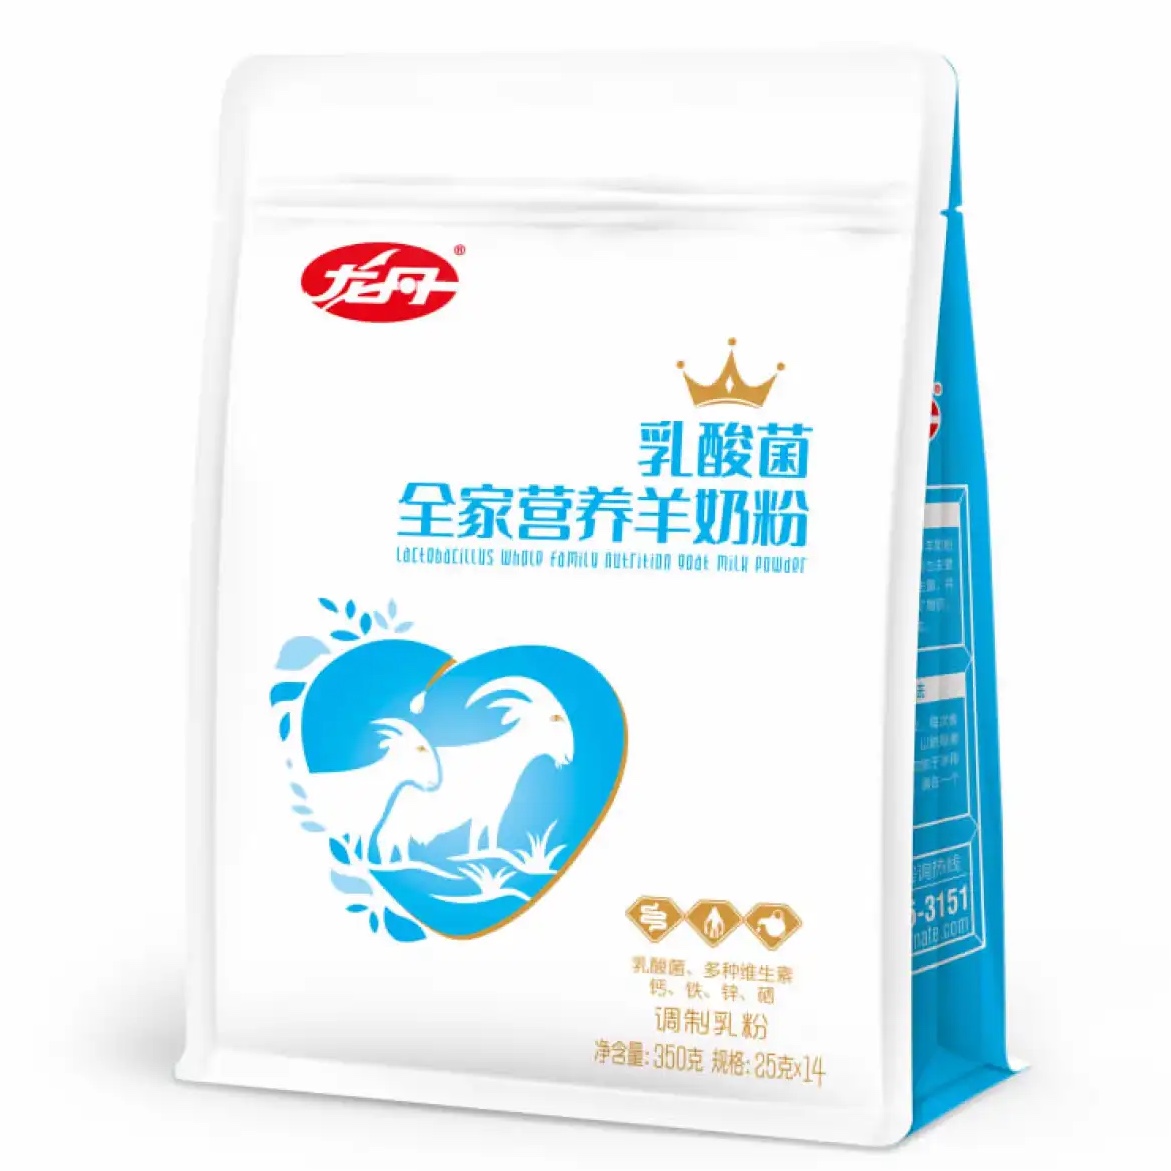 龙丹乳酸菌全家营养羊奶粉成人奶粉350g袋装包邮